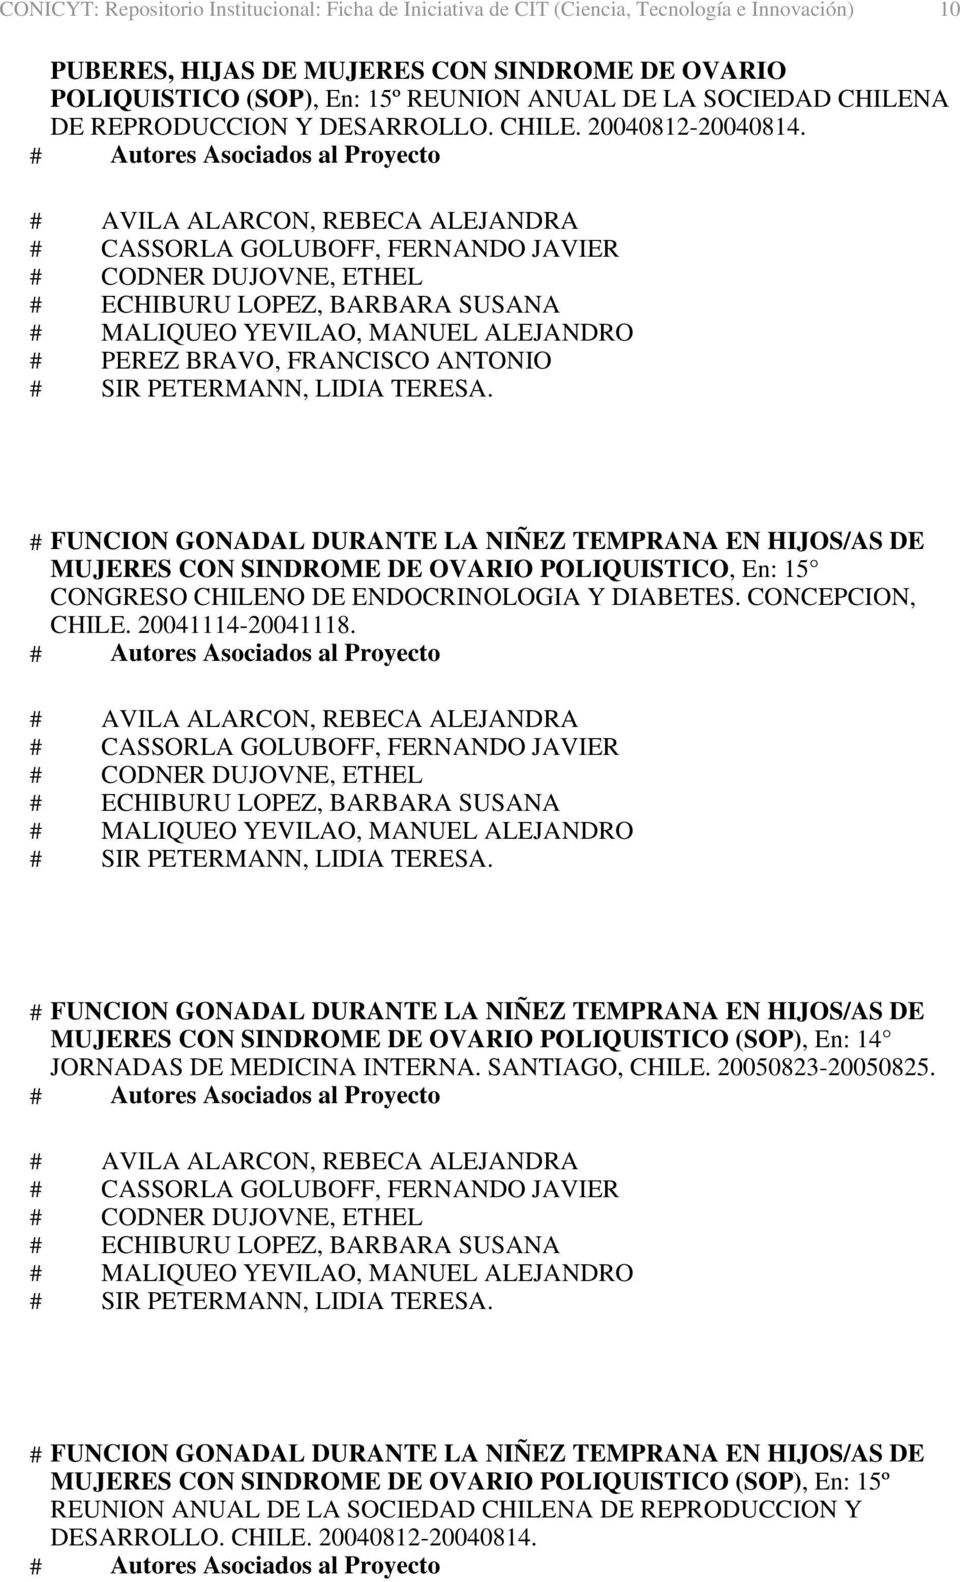 # AVILA ALARCON, REBECA ALEJANDRA # FUNCION GONADAL DURANTE LA NIÑEZ TEMPRANA EN HIJOS/AS DE MUJERES CON SINDROME DE OVARIO POLIQUISTICO, En: 15 CONGRESO CHILENO DE ENDOCRINOLOGIA Y DIABETES.